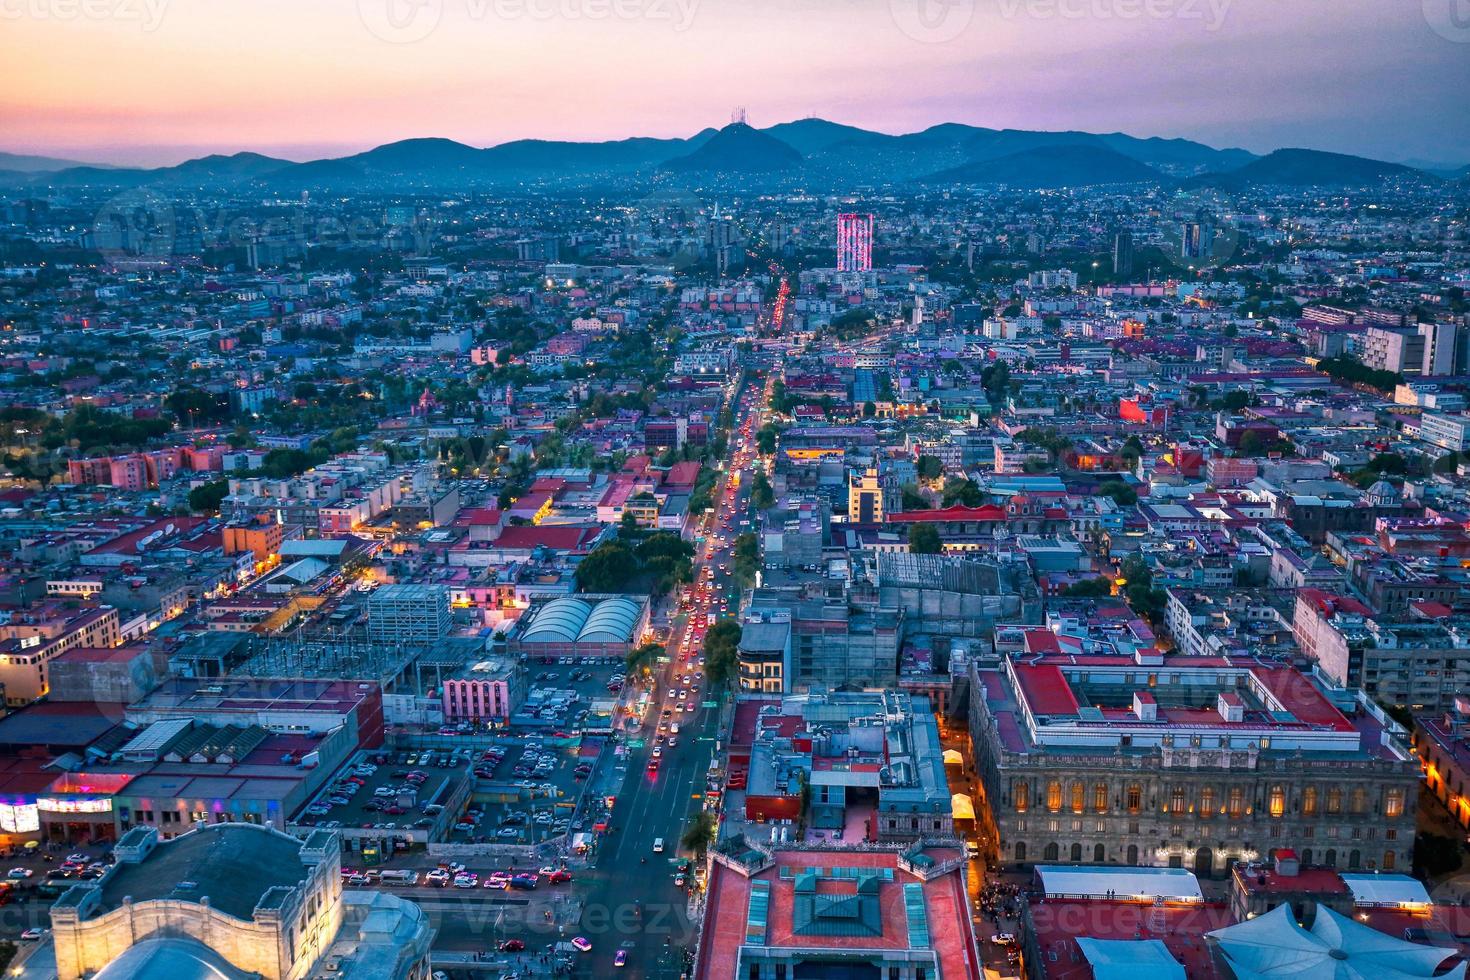 vue panoramique sur la ville de mexico depuis la terrasse d'observation au sommet de la tour latino-américaine torre latinoamericana photo